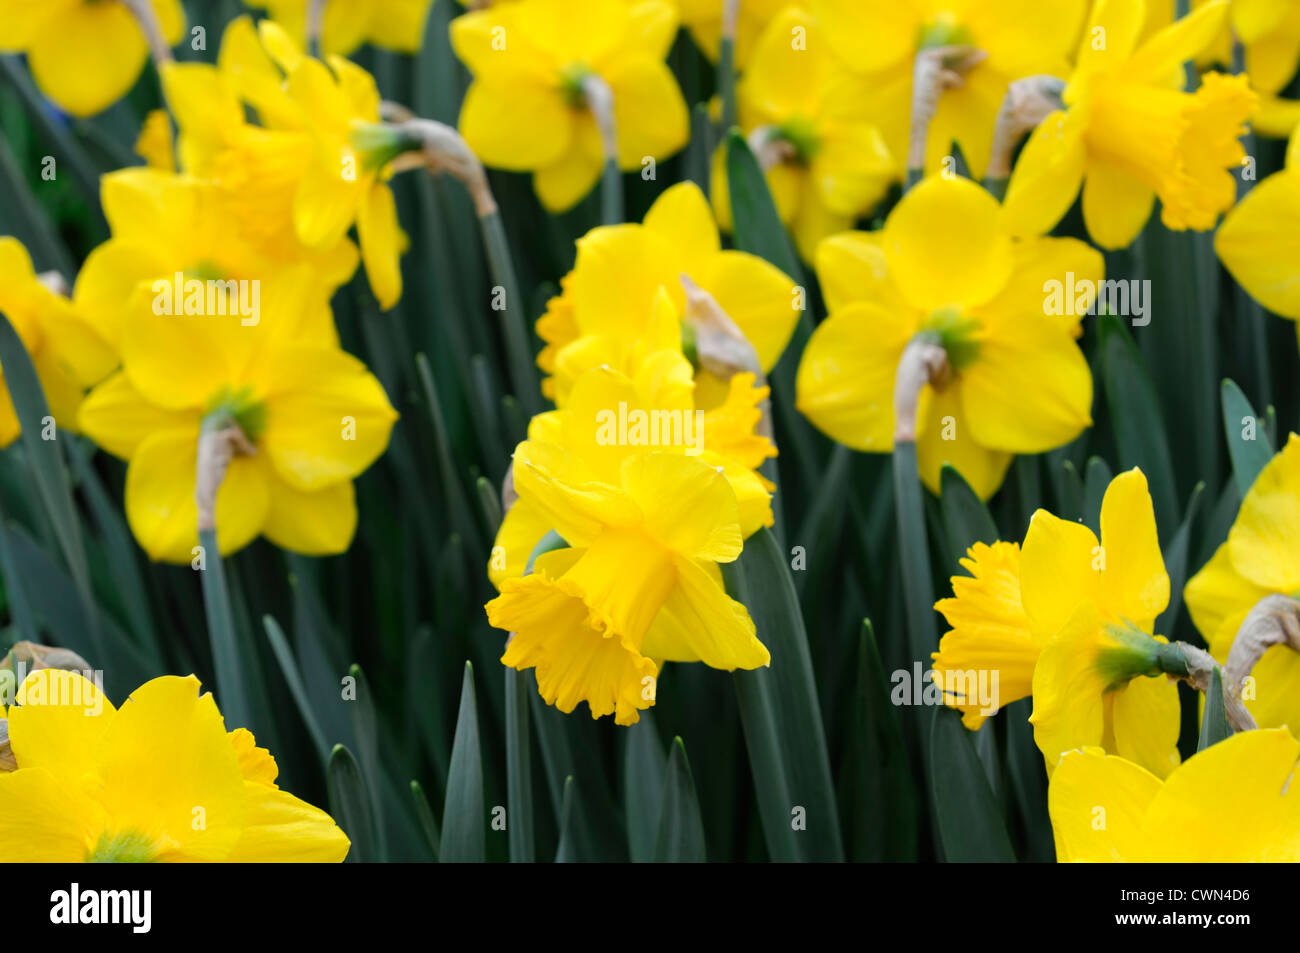 Narcisse trompette jaune jonquille primeur narcisses bulbes Fleurs jonquilles printemps fleur fleurs point sélective Banque D'Images